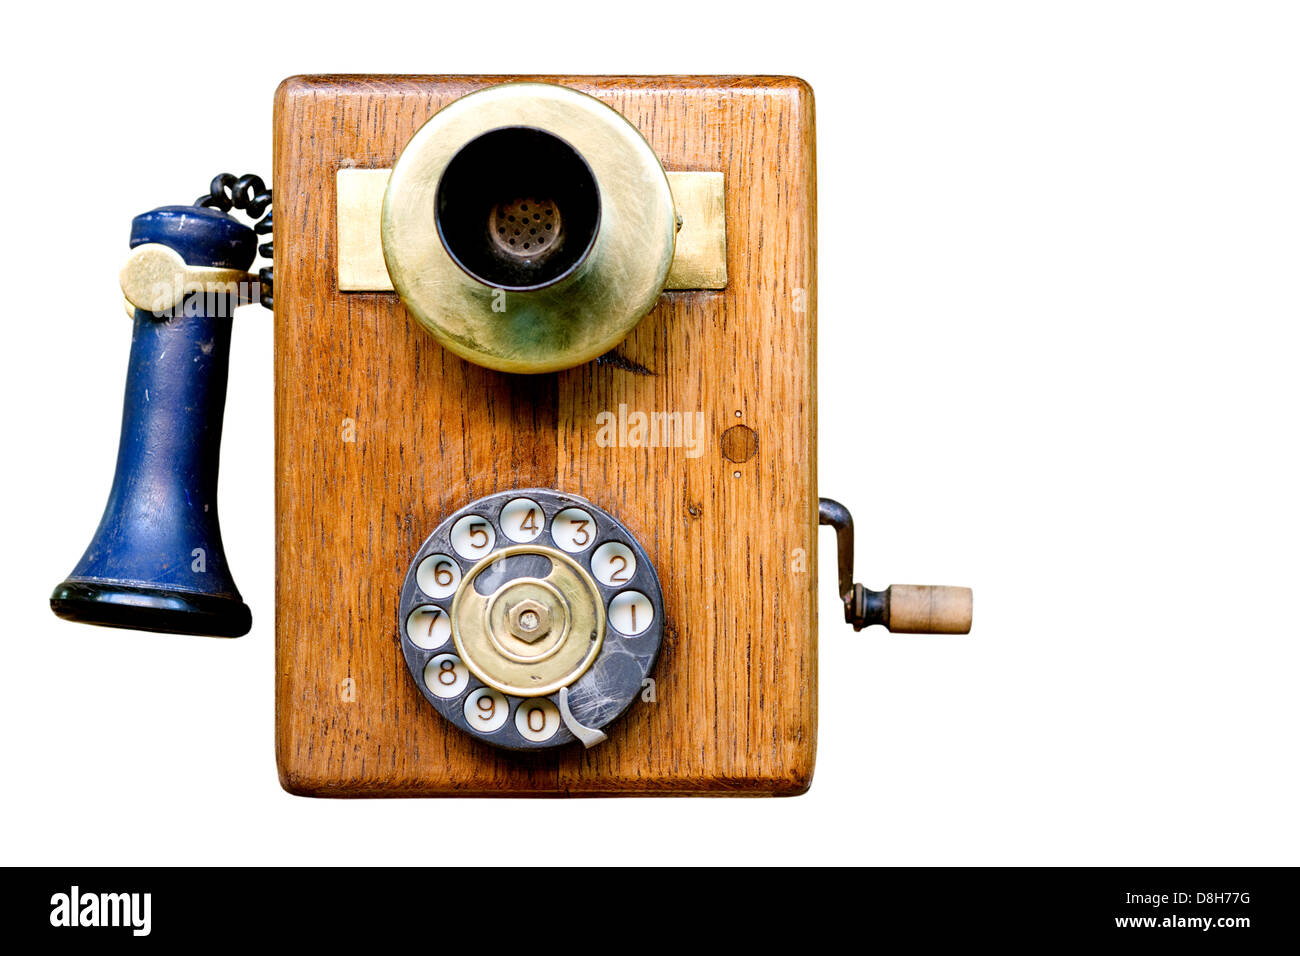 Art Clipart Telephone Stockfotos Und Bilder Kaufen Alamy